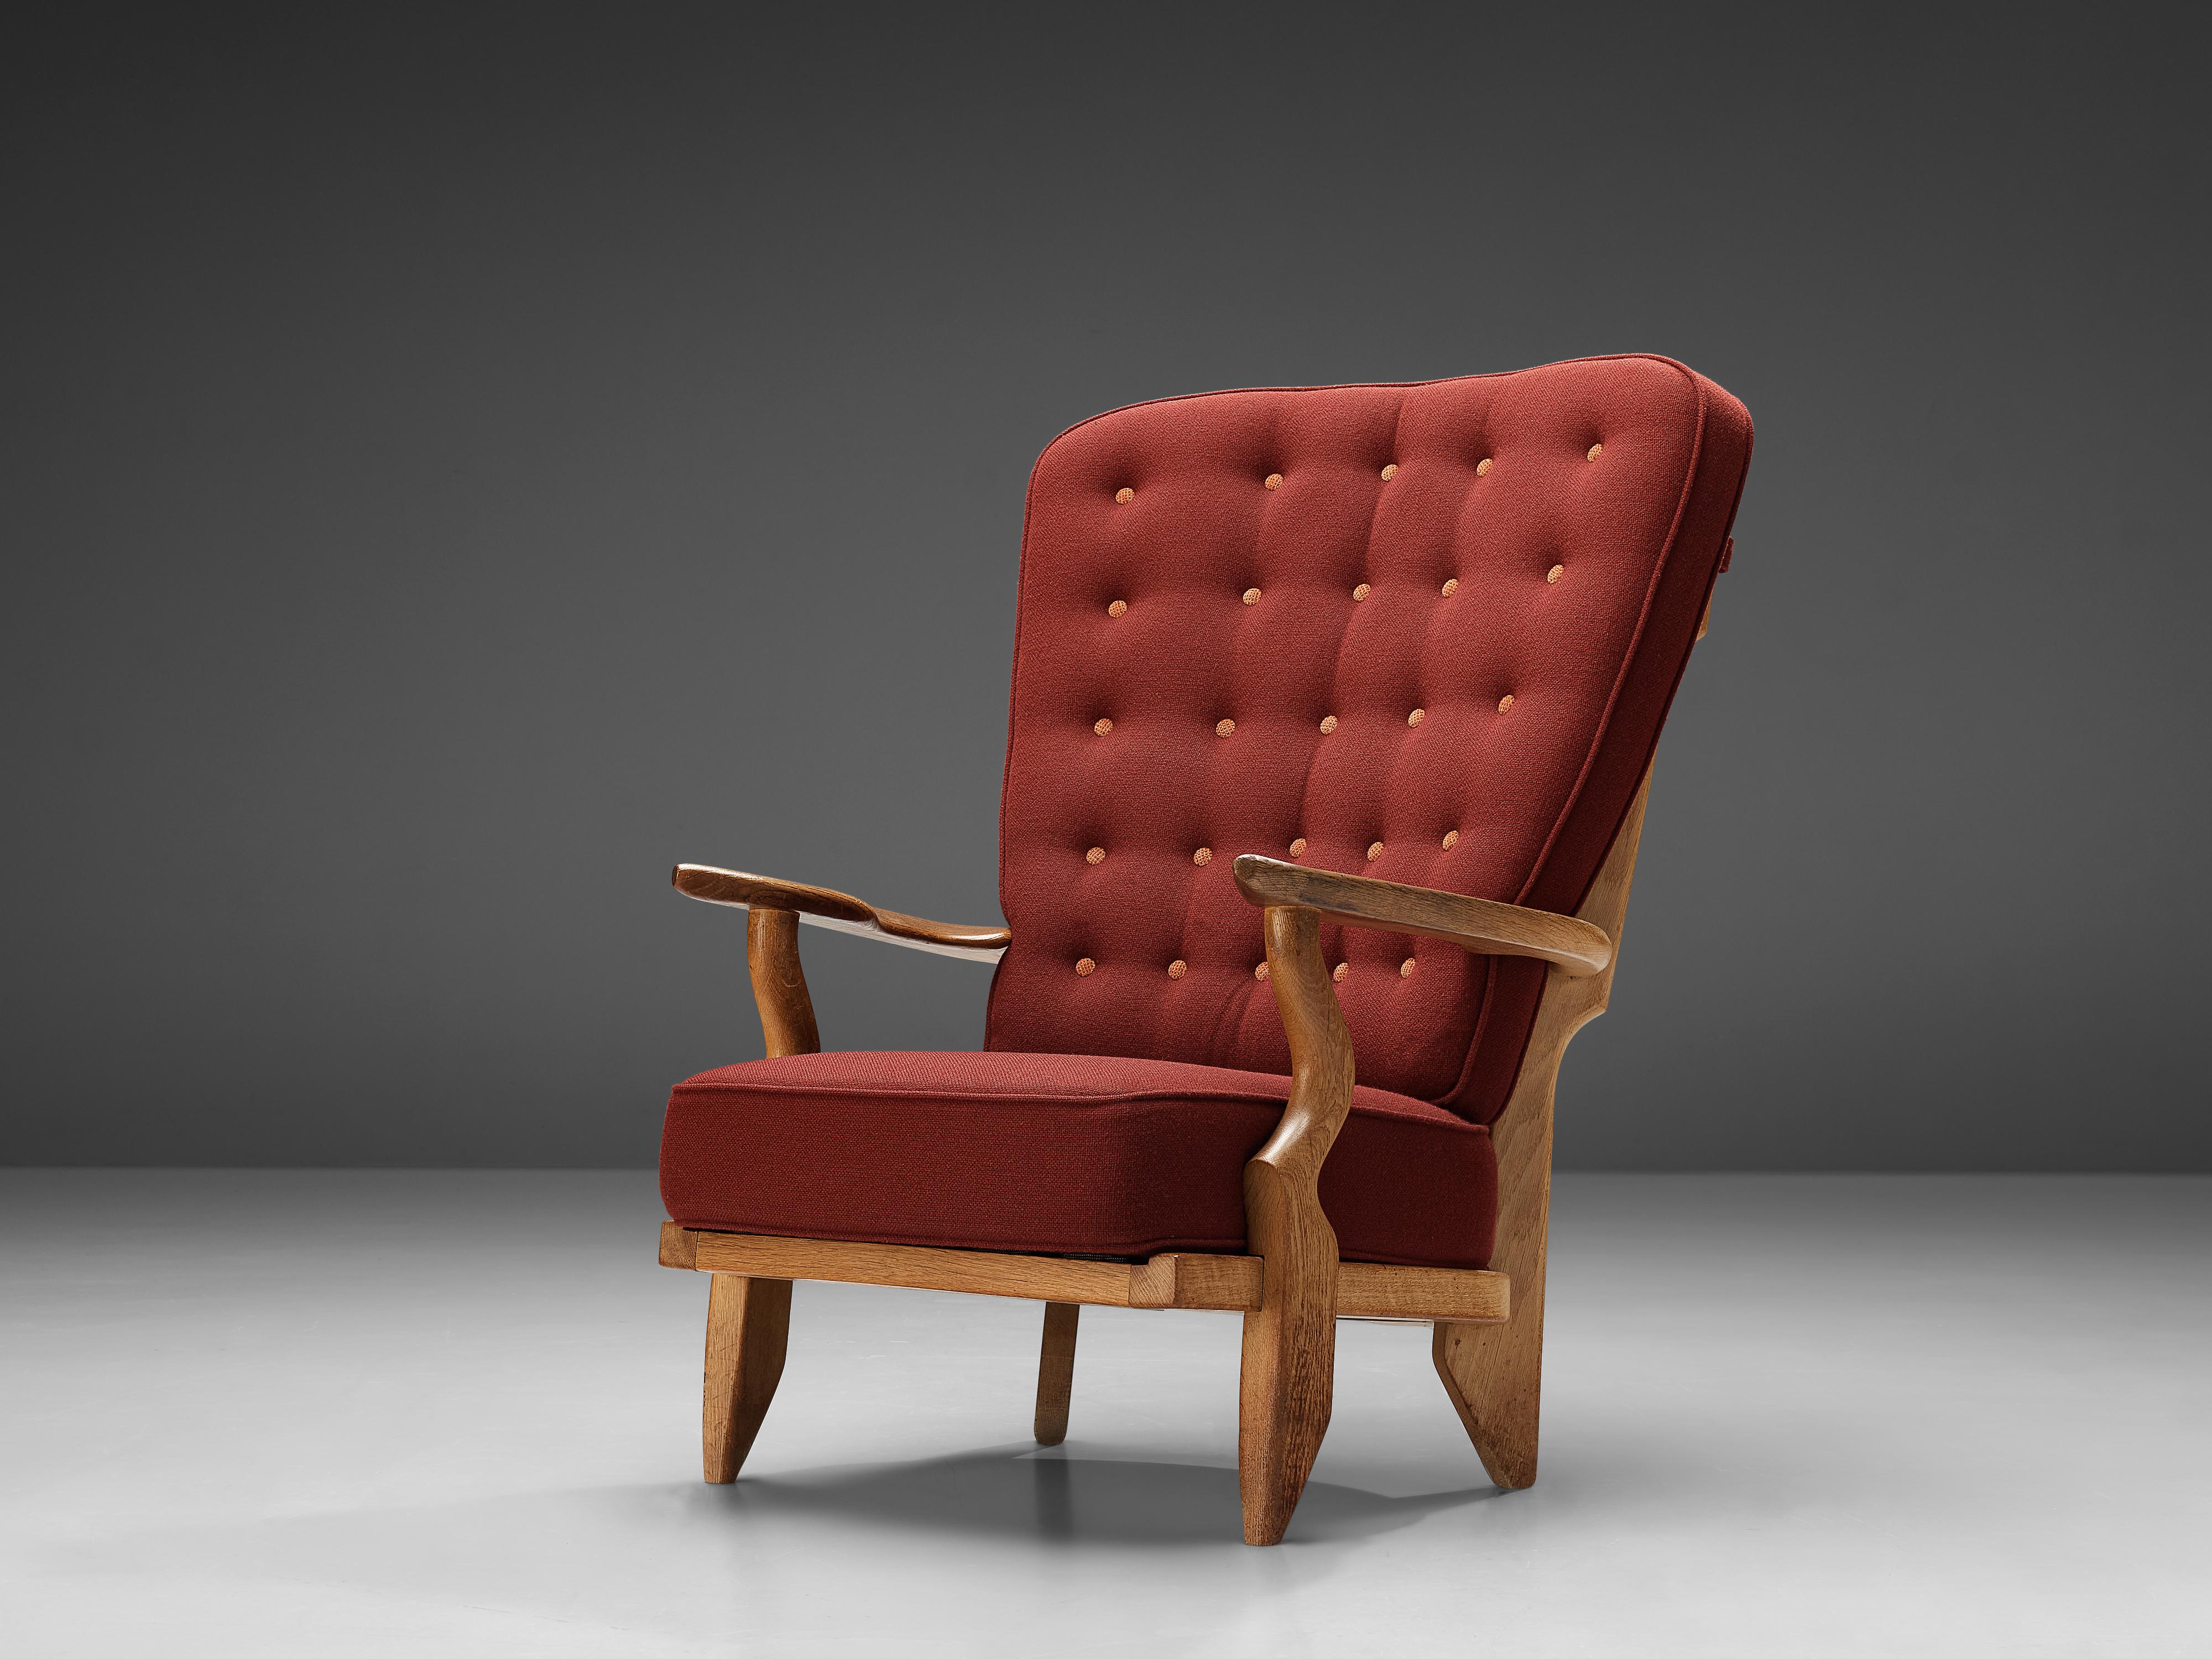 Guillerme et Chambron pour Votre Maison, chaise longue 'Grand Repos', chêne, tapisserie rouge bordeaux, France, années 1960

Guillerme et Chambron sont connus pour leurs meubles en chêne massif de haute qualité, dont celui-ci est un autre exemple.